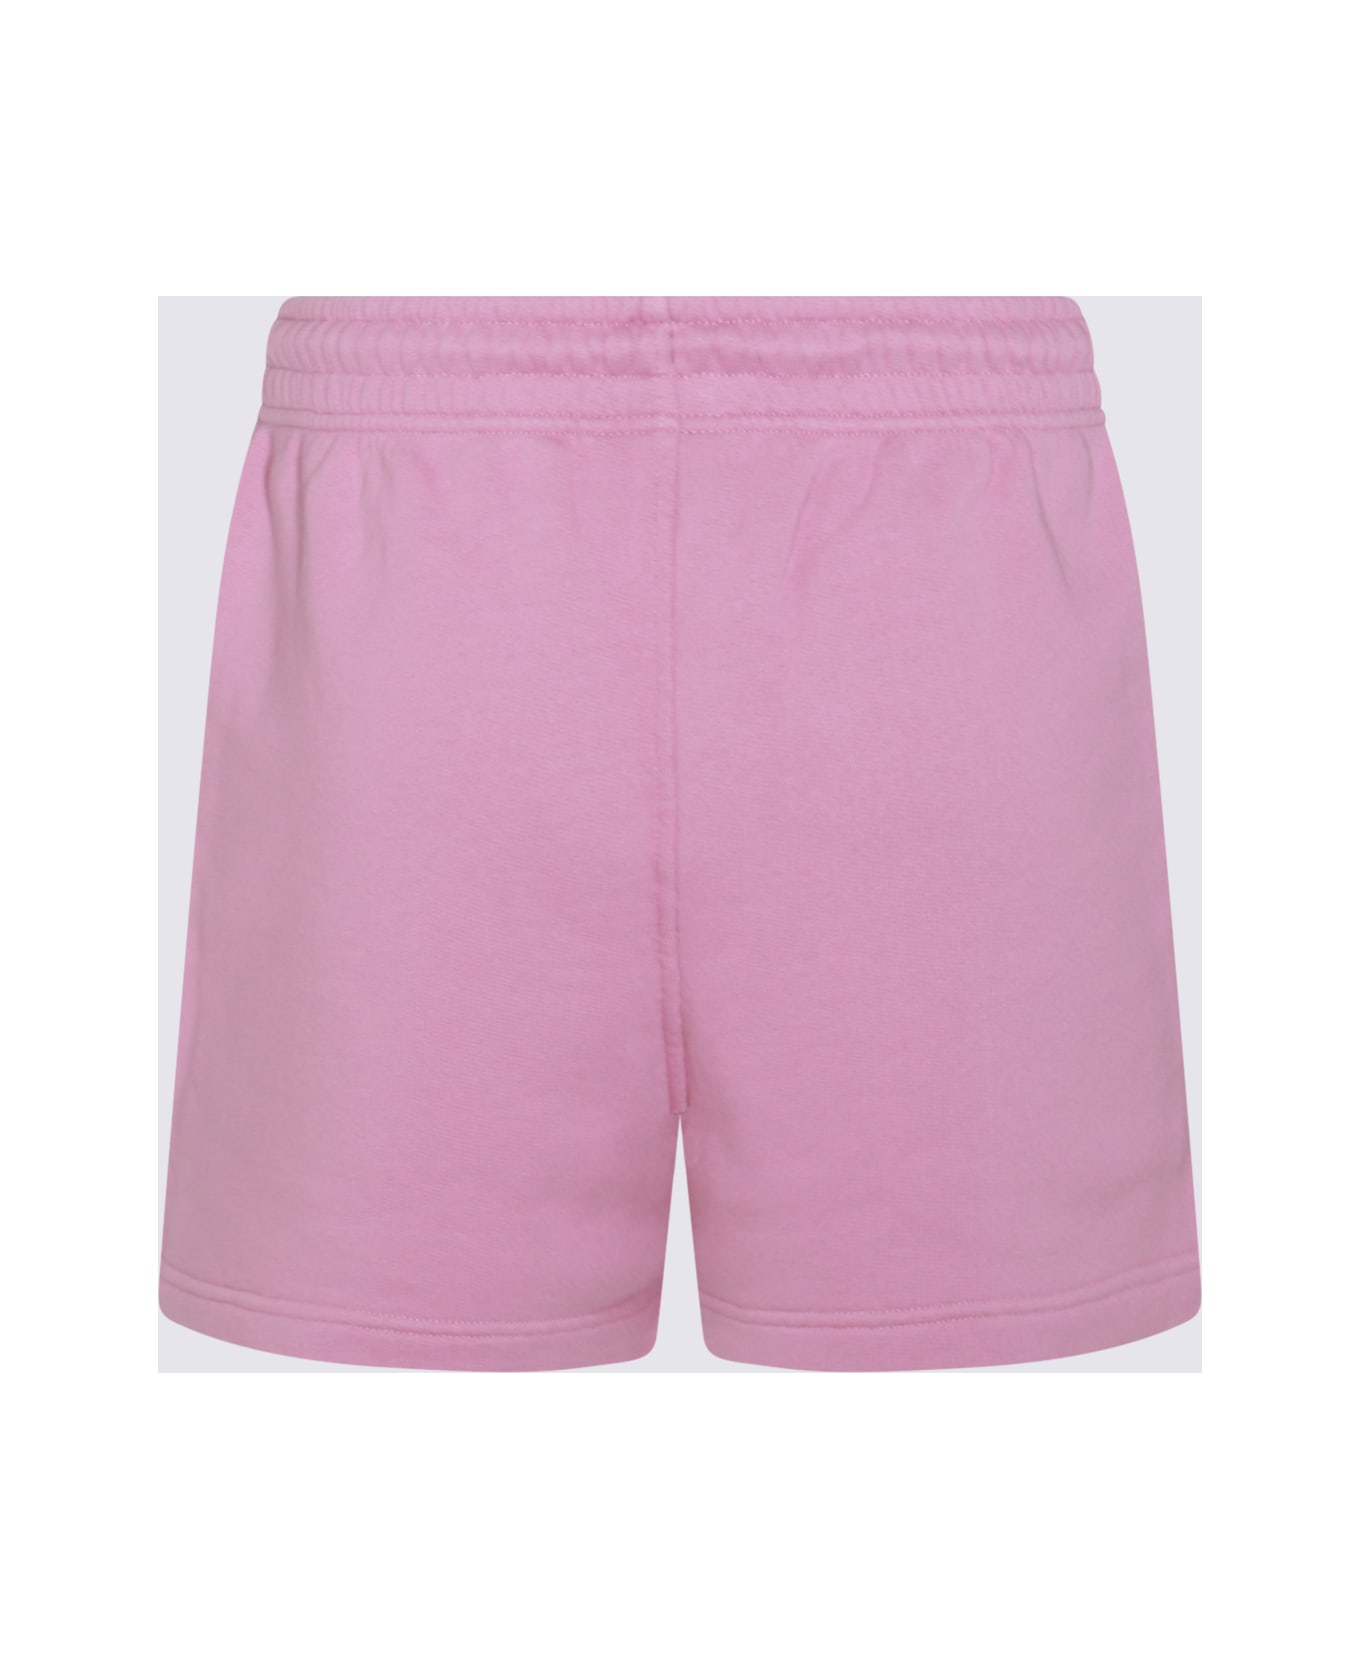 Maison Kitsuné Pink Cotton Shorts - BLOSSOM ショートパンツ